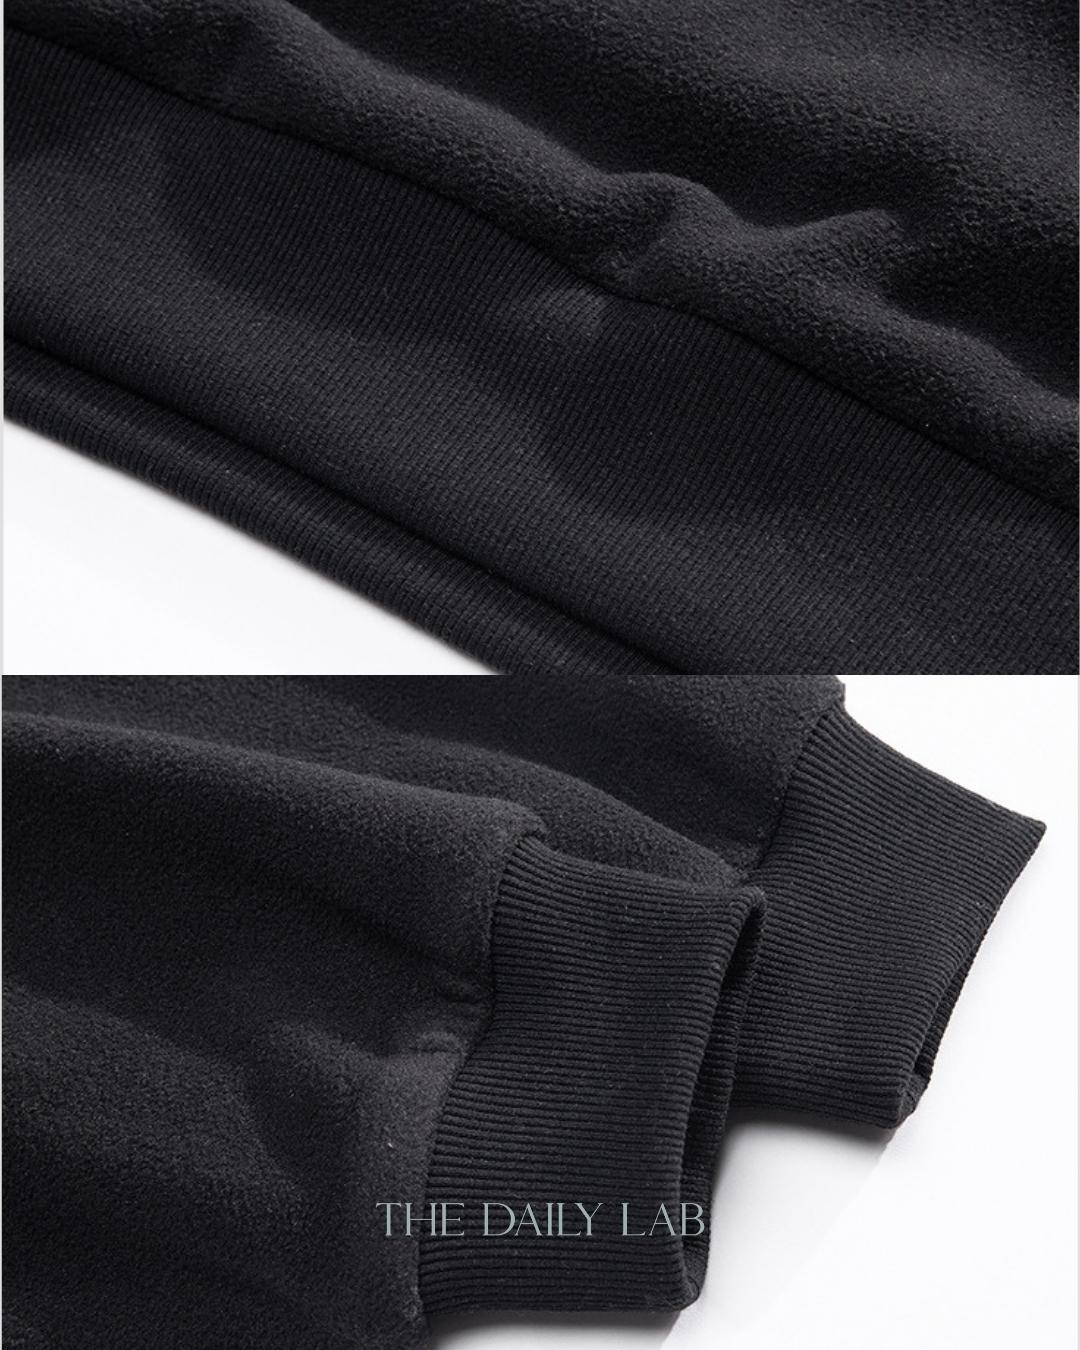 NOTEARS Long Sleeve Sweater in Black